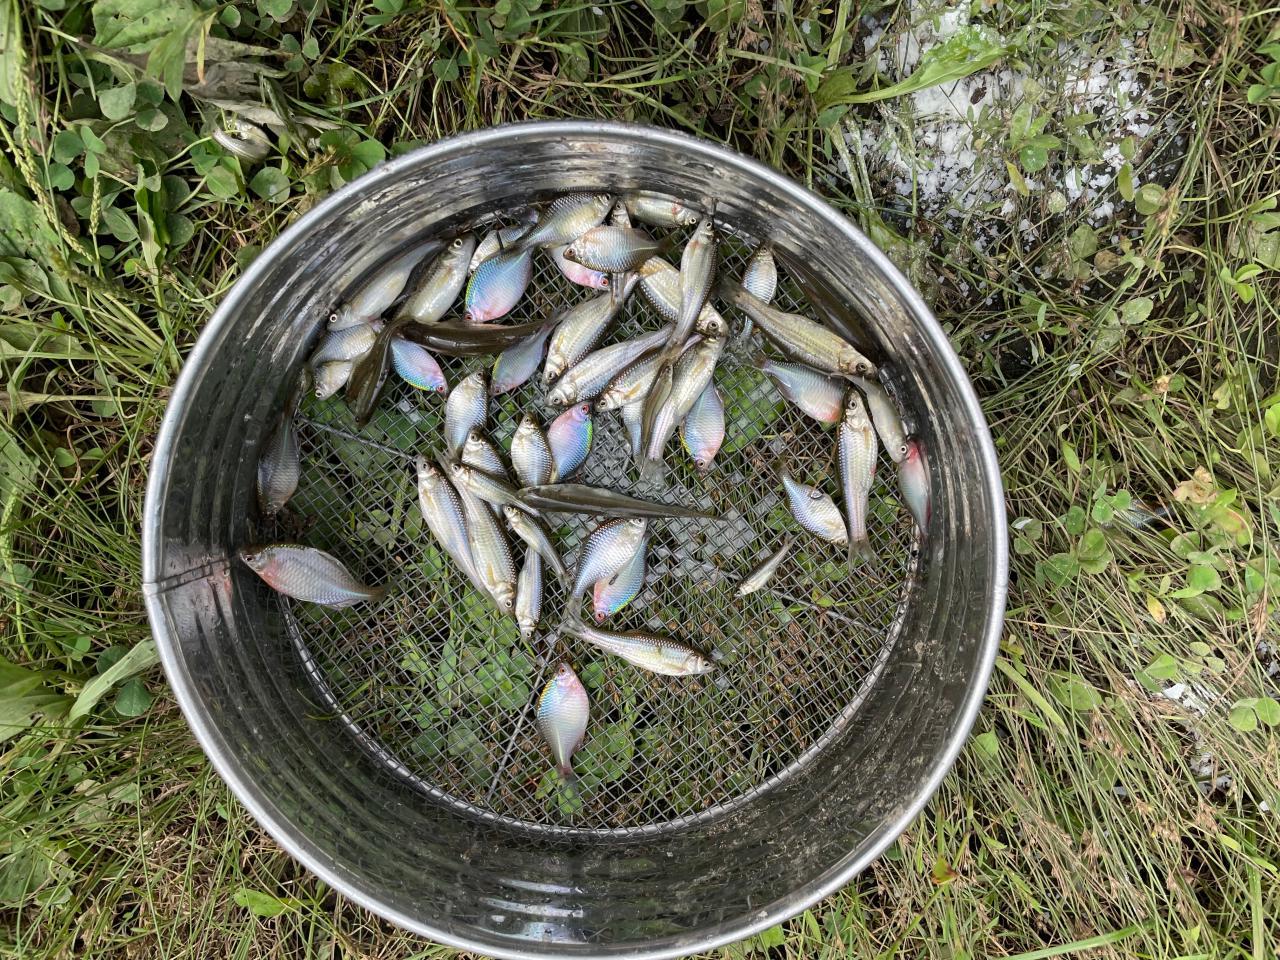 2022.08.13　沼に自家製の魚網かごを仕掛けてタイリクバラタナゴ（虹色が美しい雄）を採る。➡